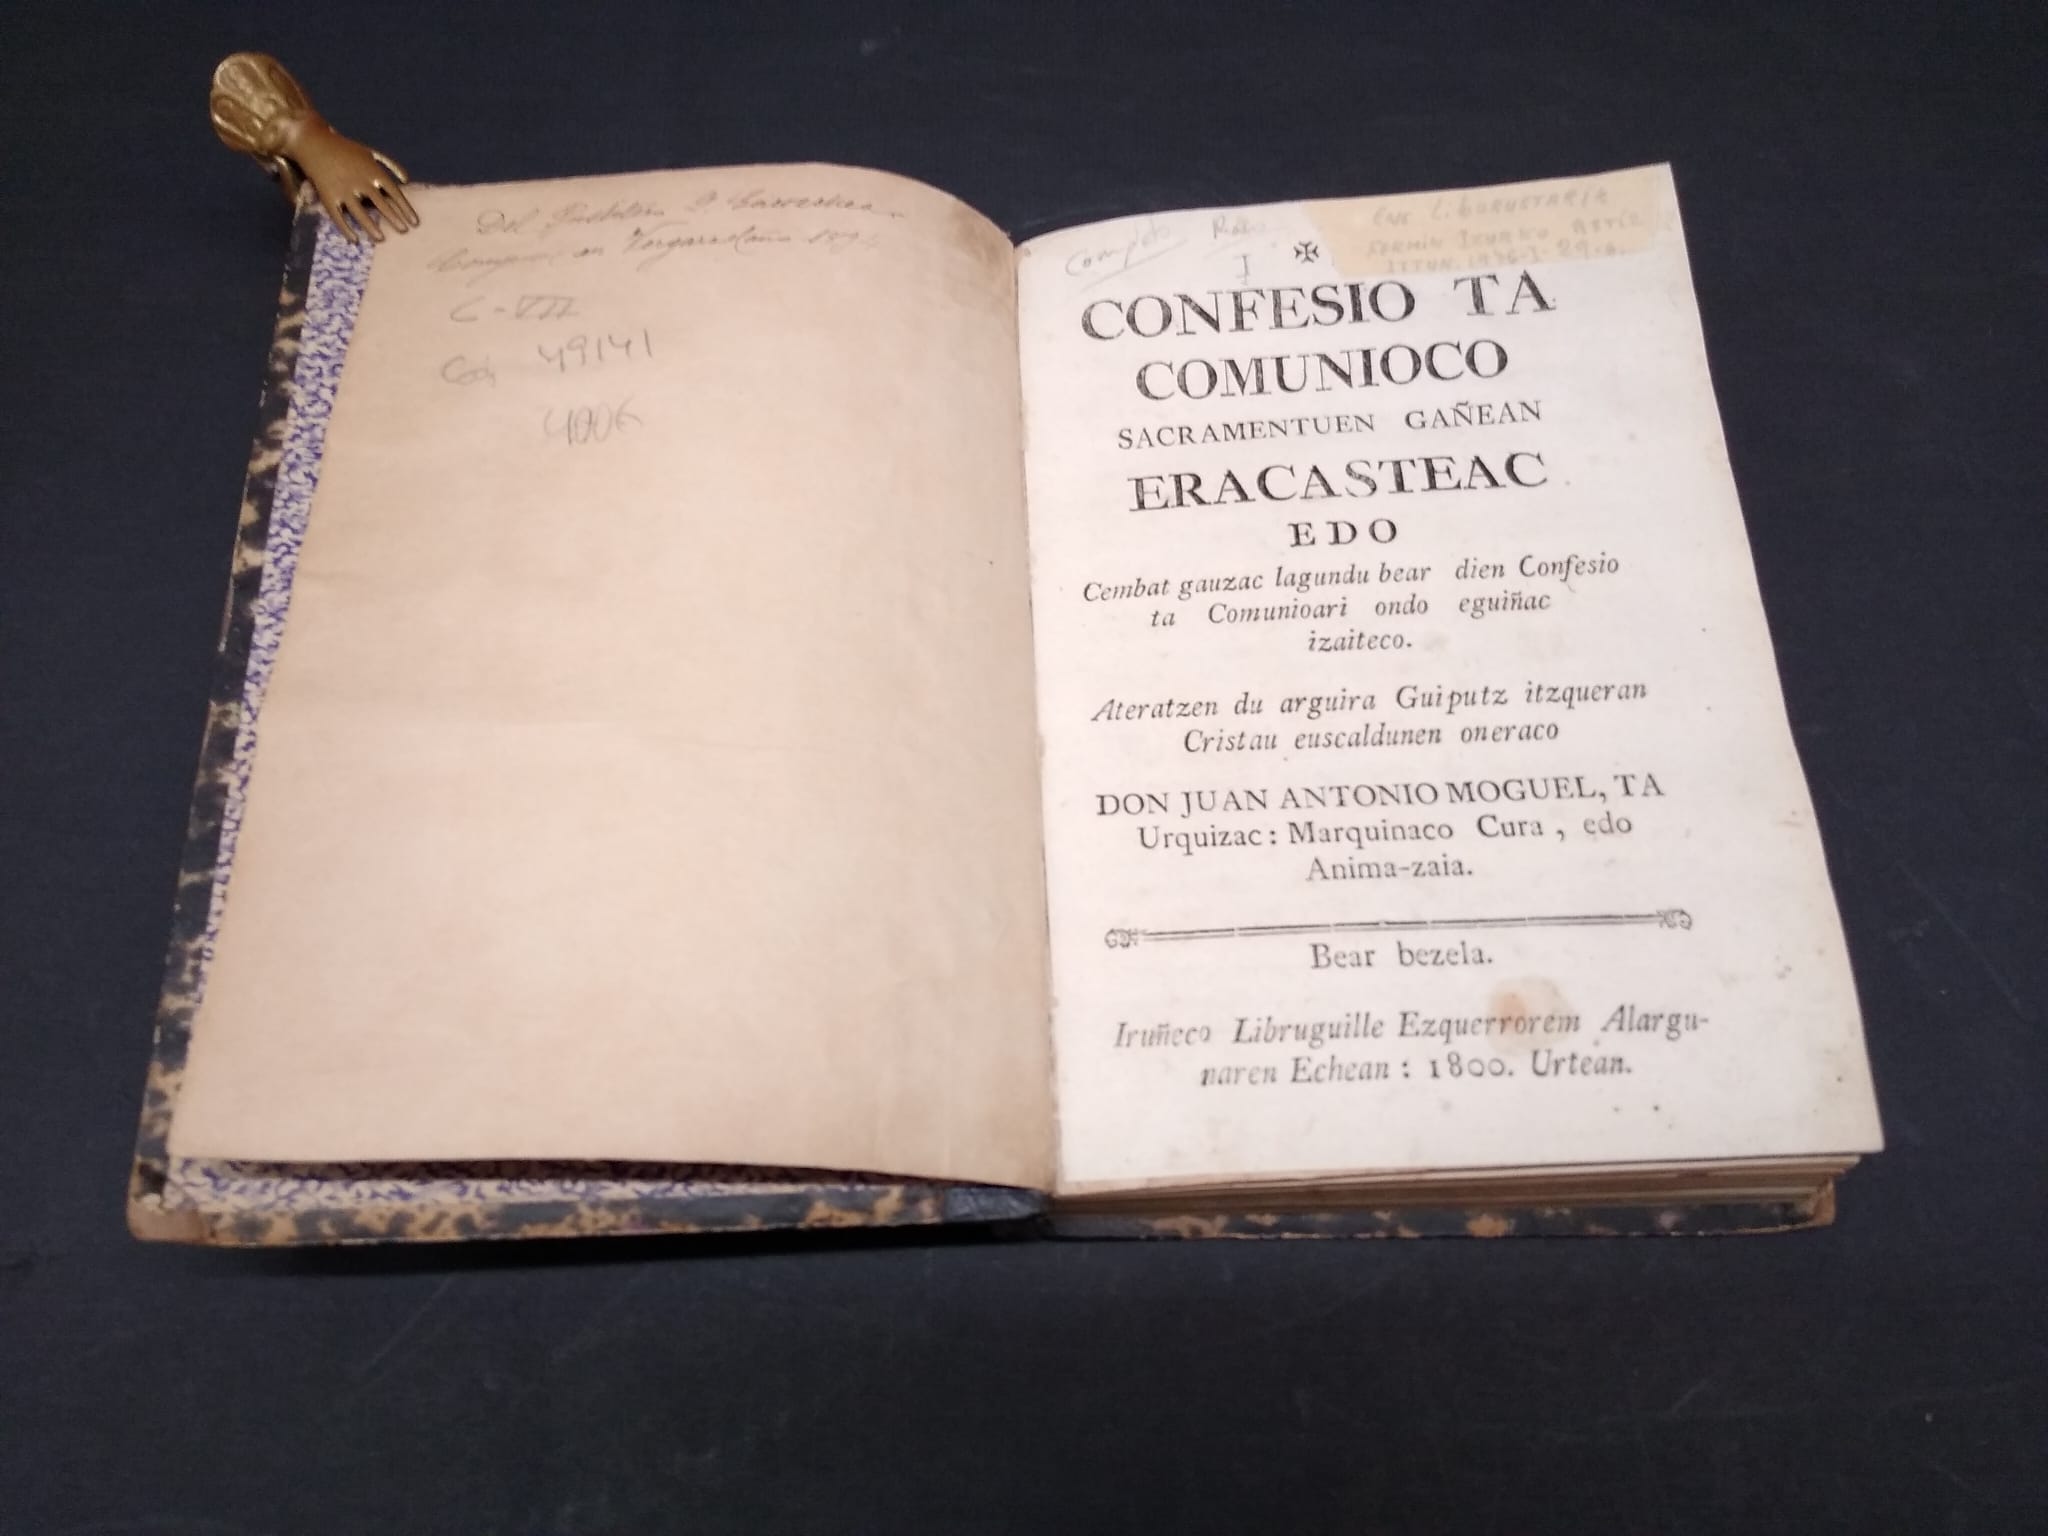 Dos libros raros de Juan Antonio Mogel en la Biblioteca municipal